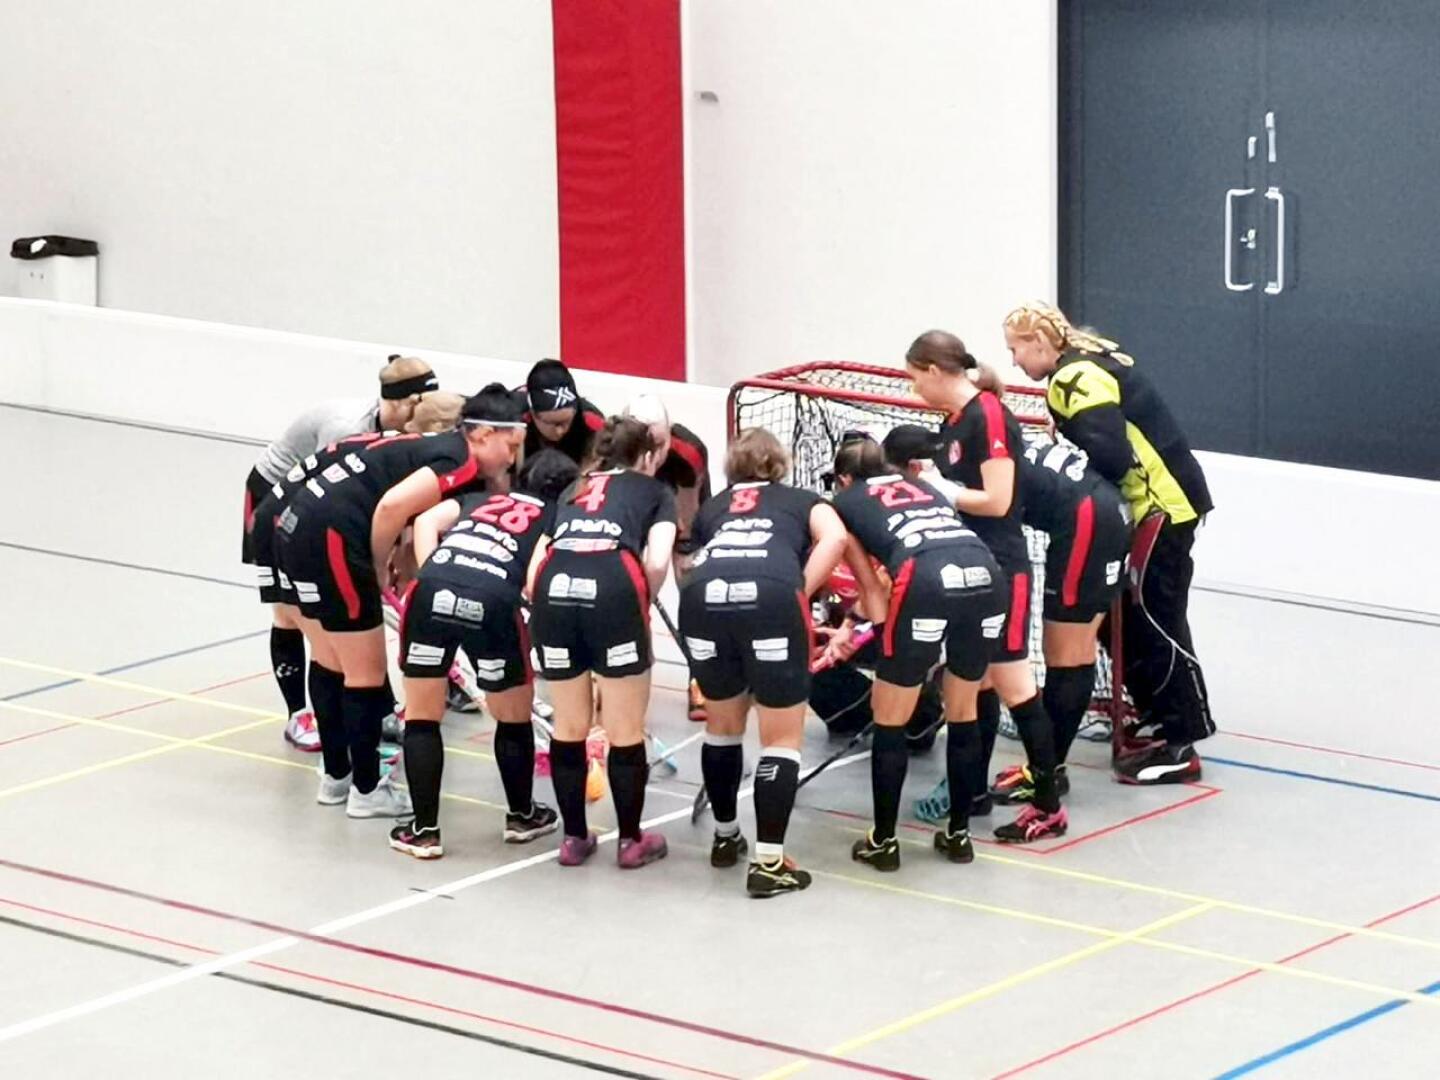 SB Nivala pelasi kauden viimeisen pelinsä jo 7. marraskuuta. Sen jälkeen joukkue harjoitteli ja odotti ratkaisuja kauden jatkumisen osalta.